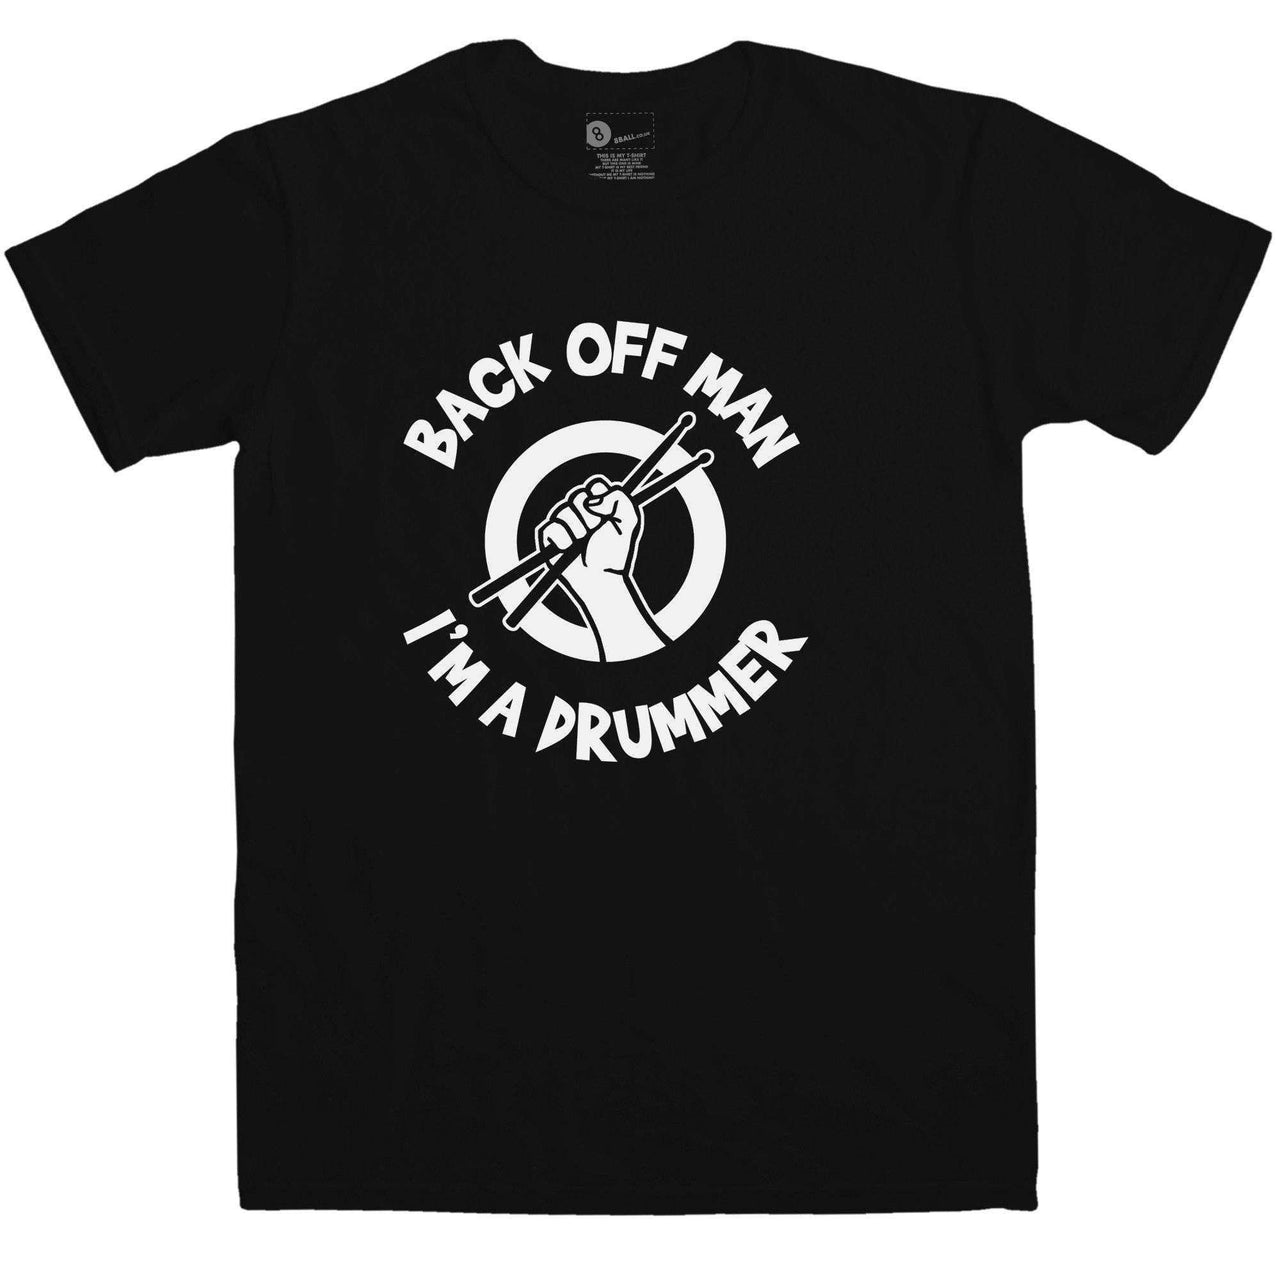 Back Off Man I'm A Drummer Funny T-Shirt For Men 8Ball